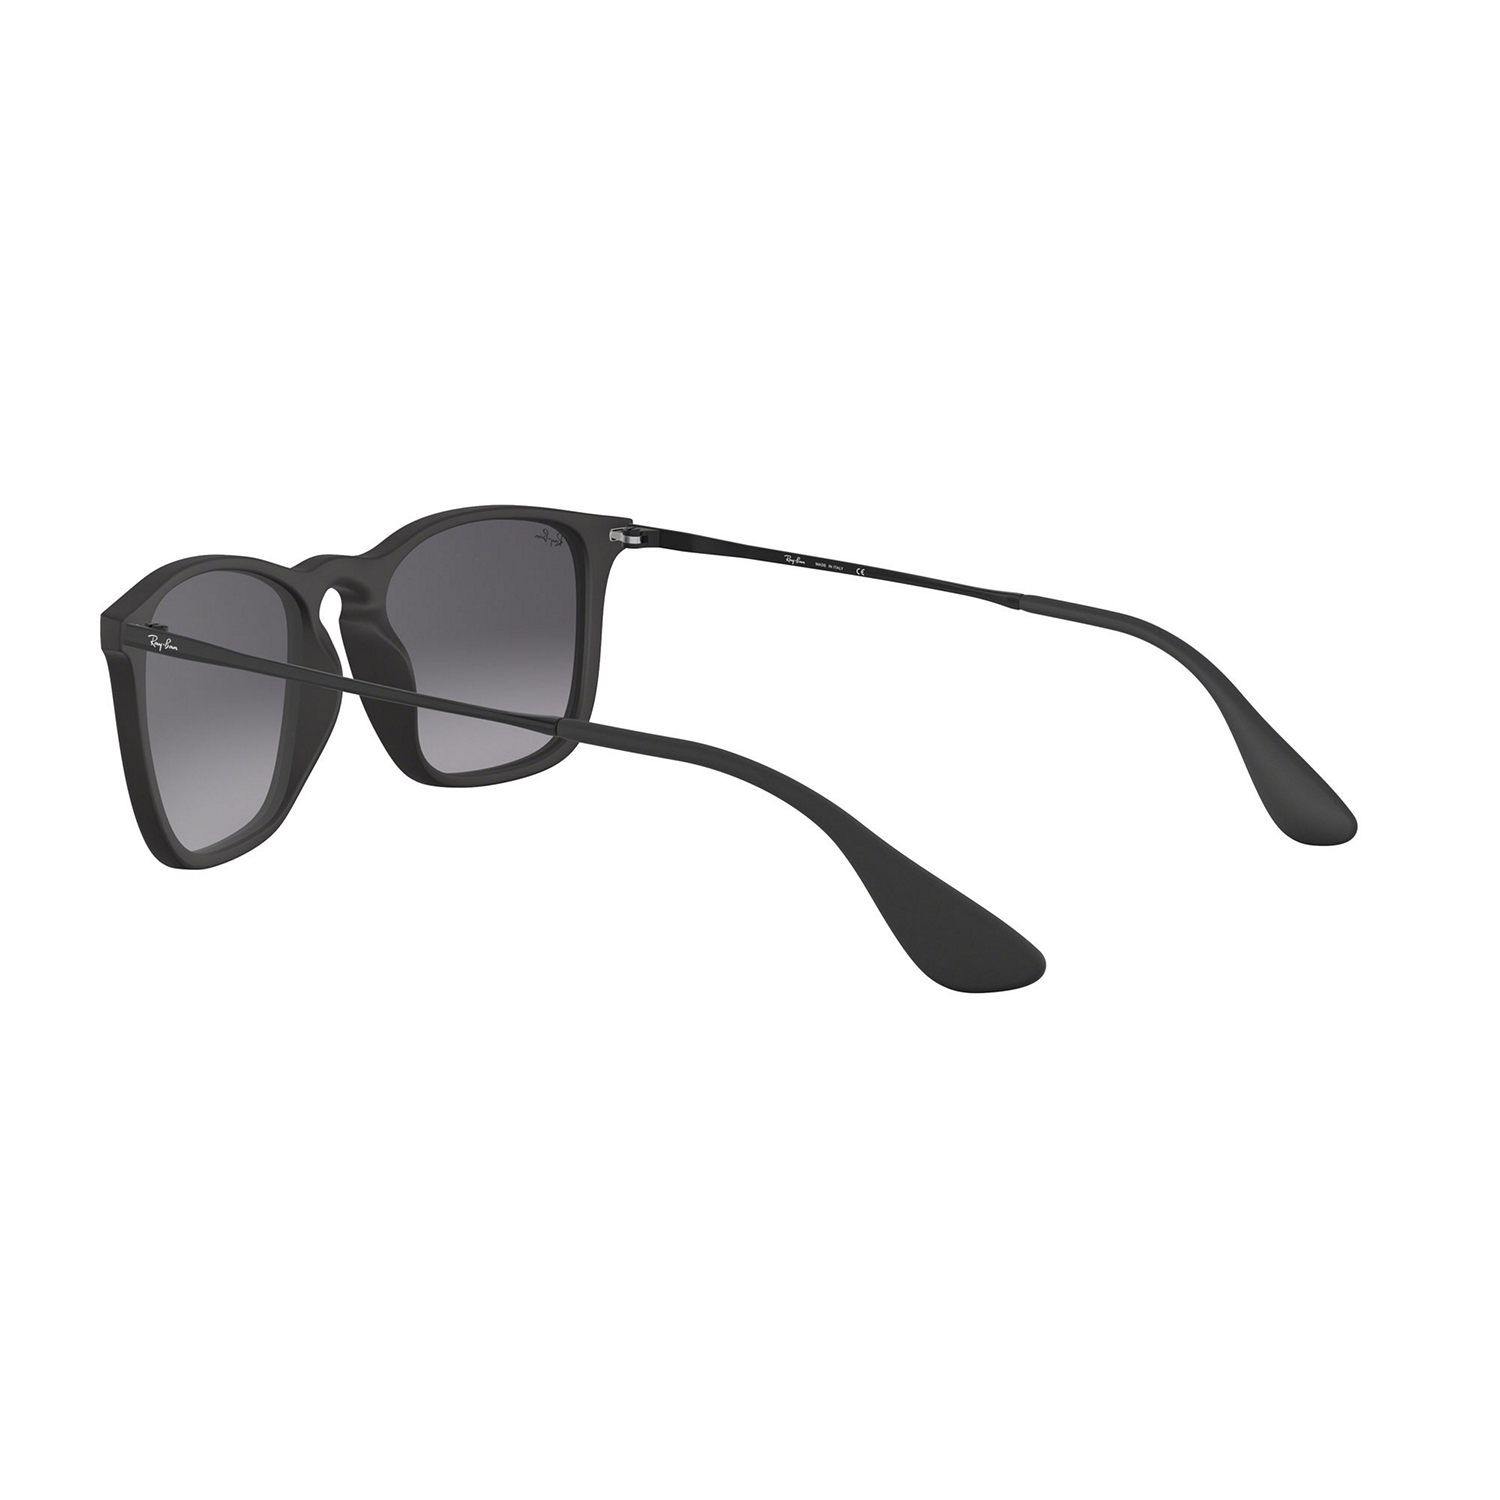 CHRIS Square Sunglasses